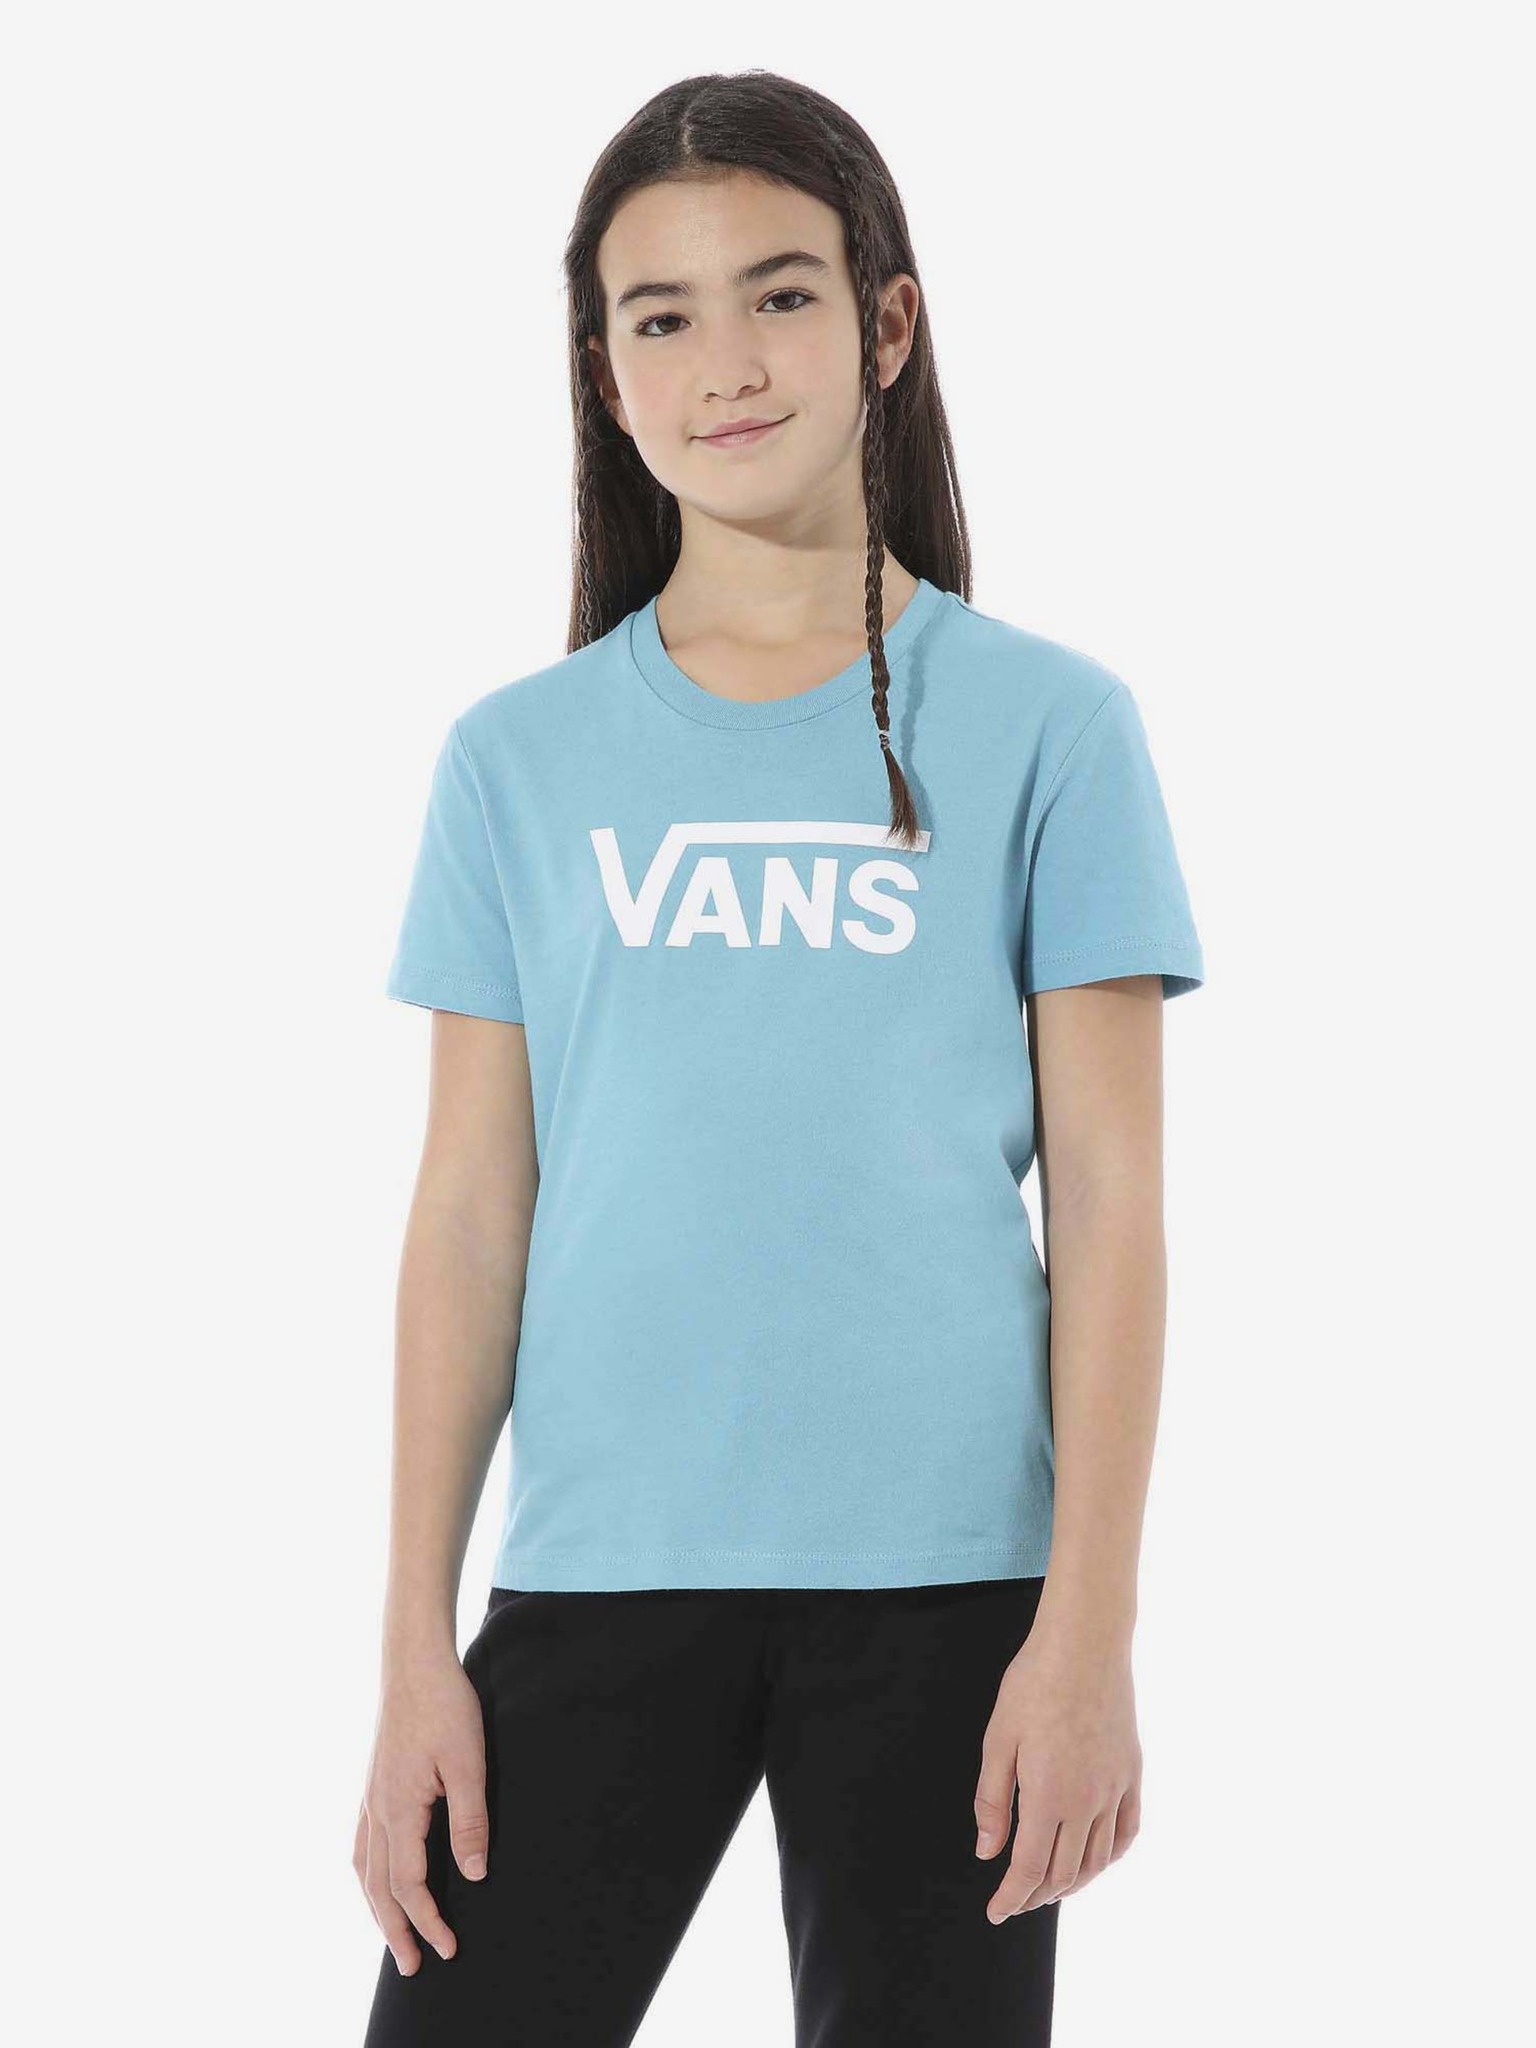 Vans - T-shirt Flying V Kids